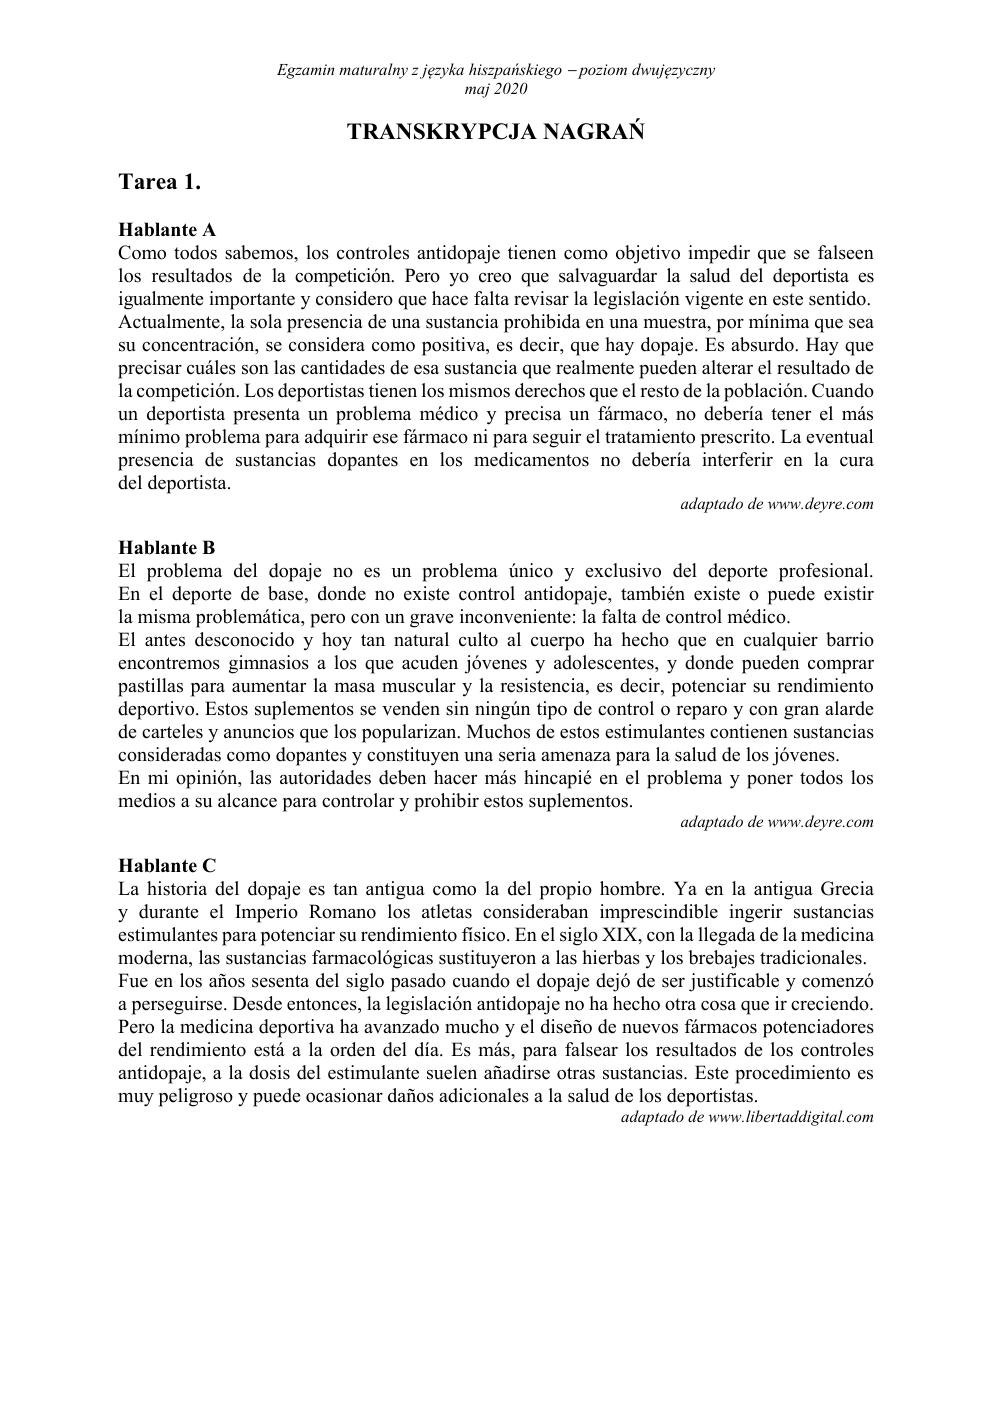 transkrypcja - hiszpański dwujęzyczny - matura 2020-1